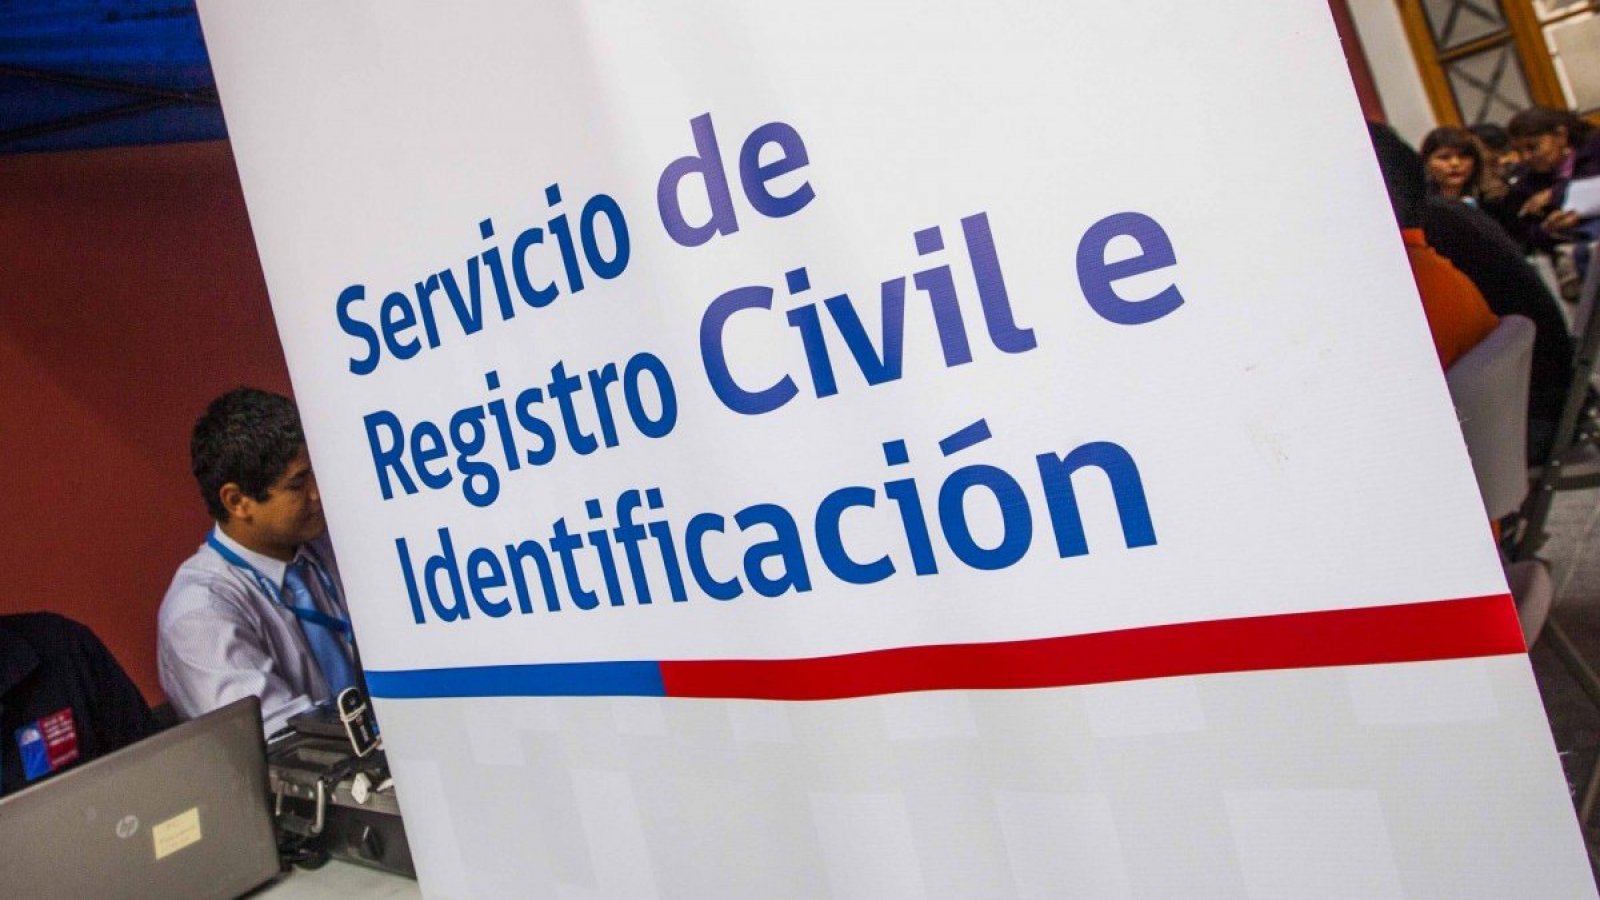 Servicio de Registro Civil e Identificación